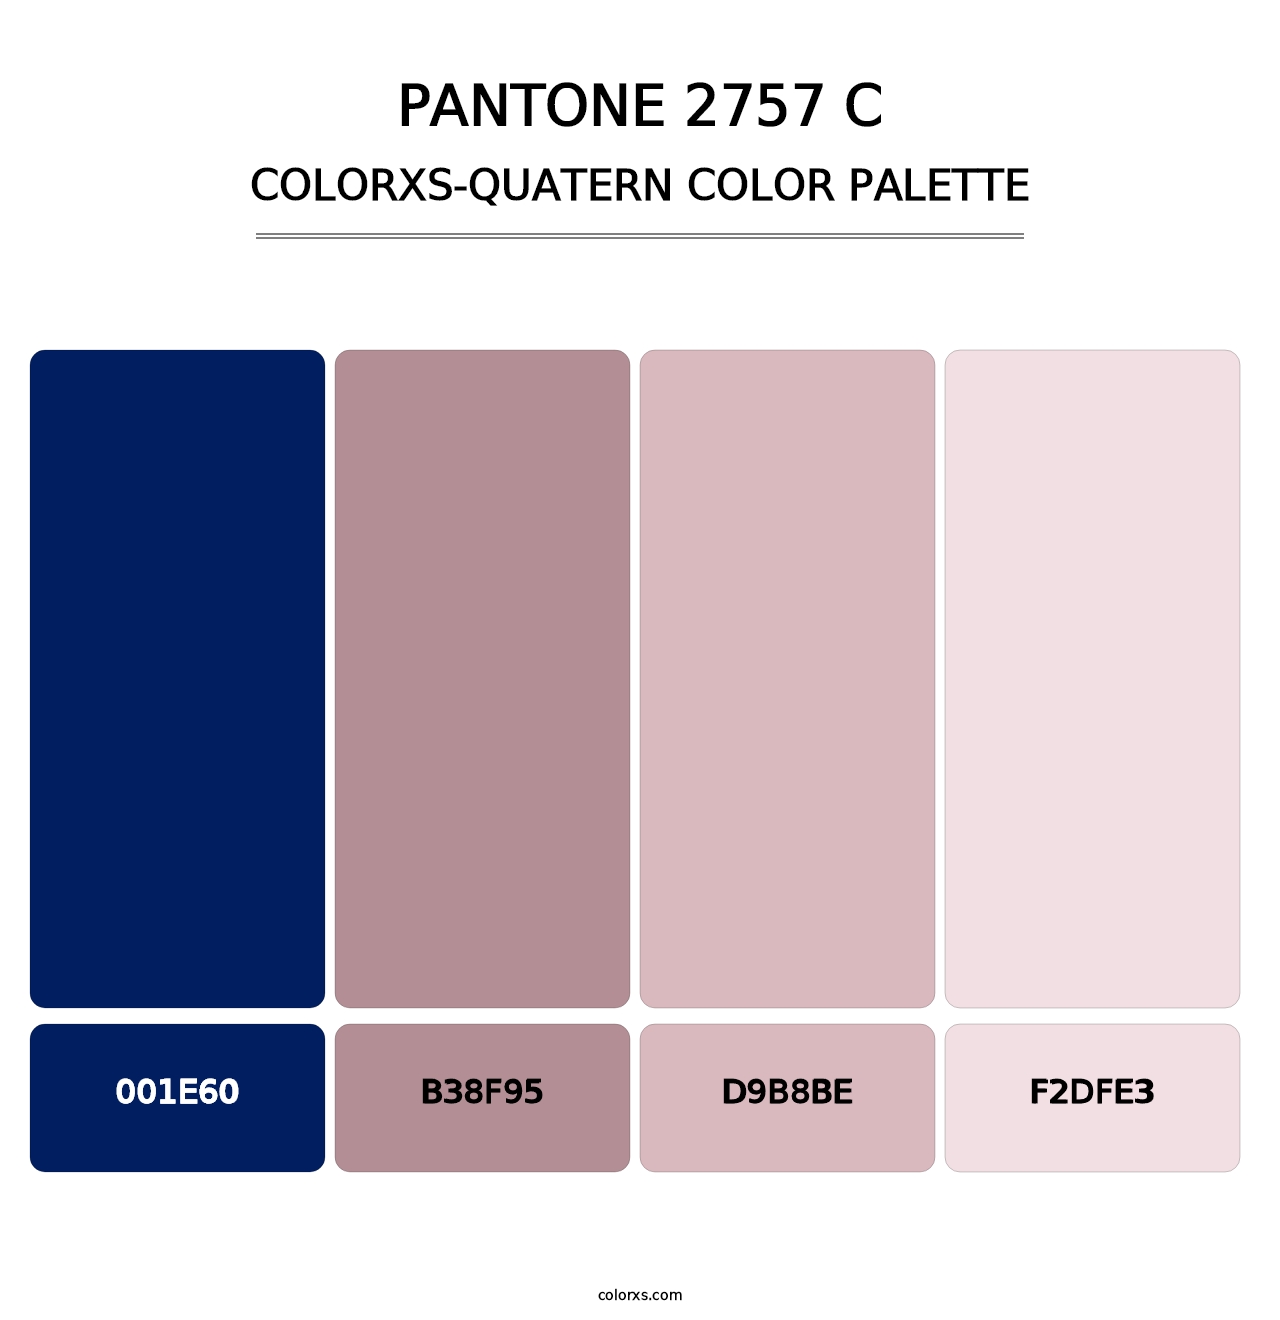 PANTONE 2757 C - Colorxs Quatern Palette